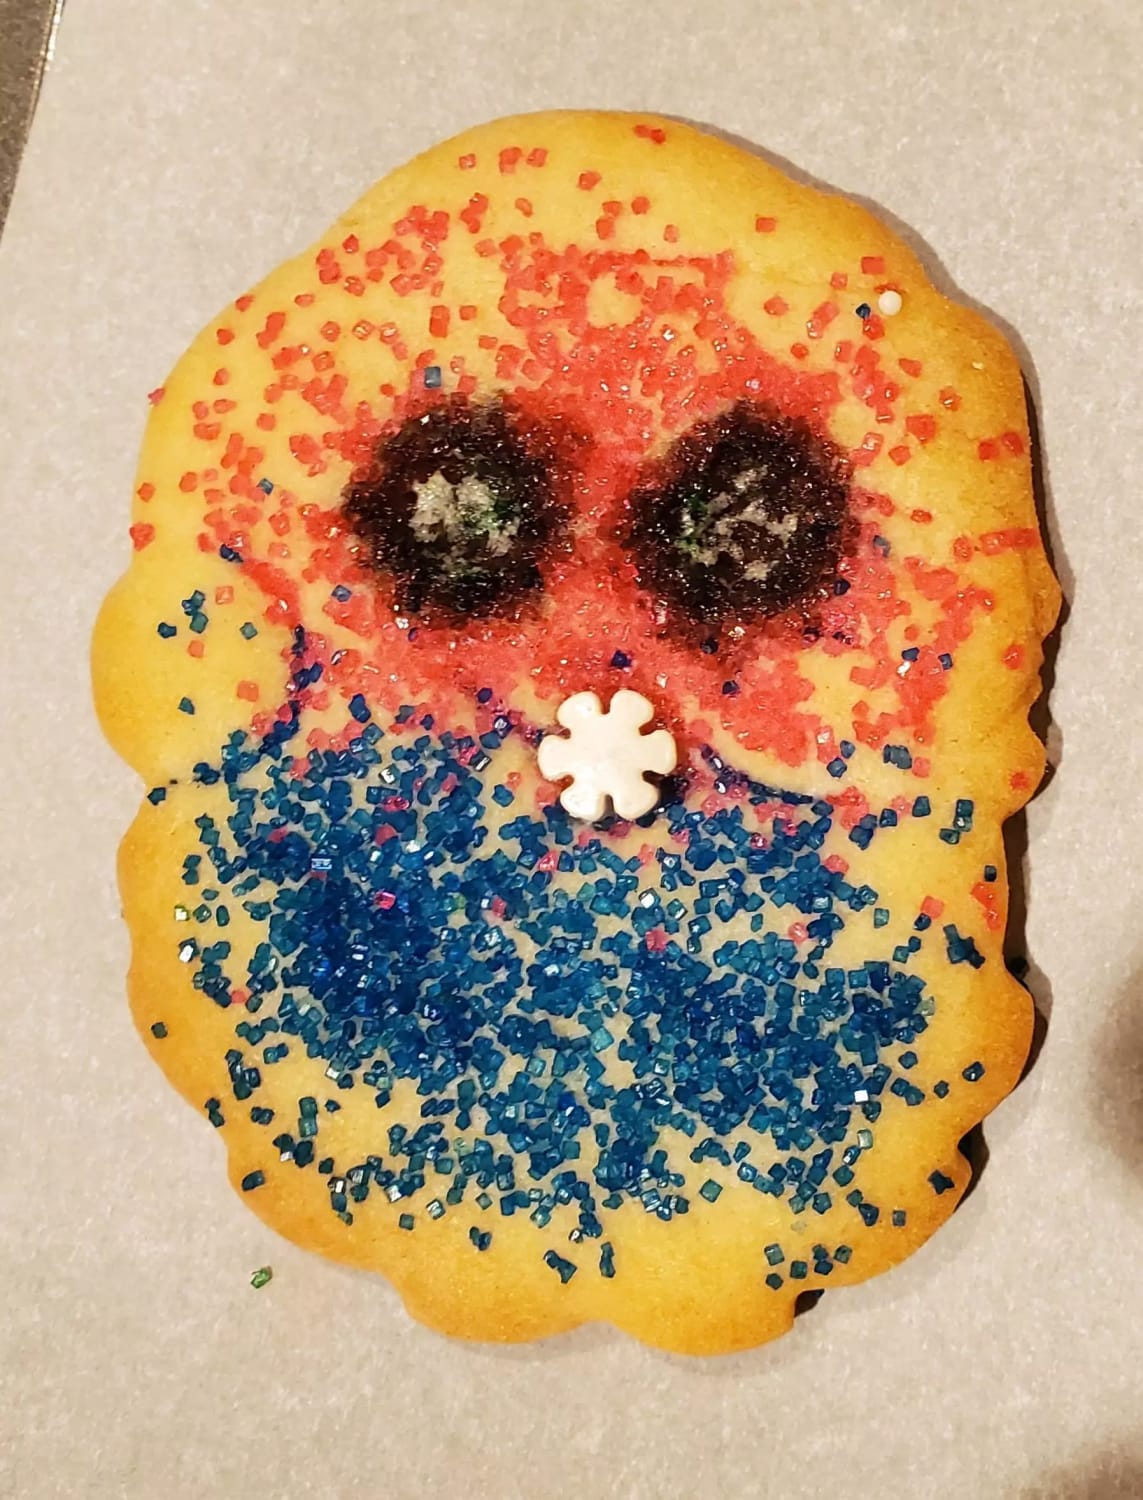 Santa cookie looking more like Satan cookie